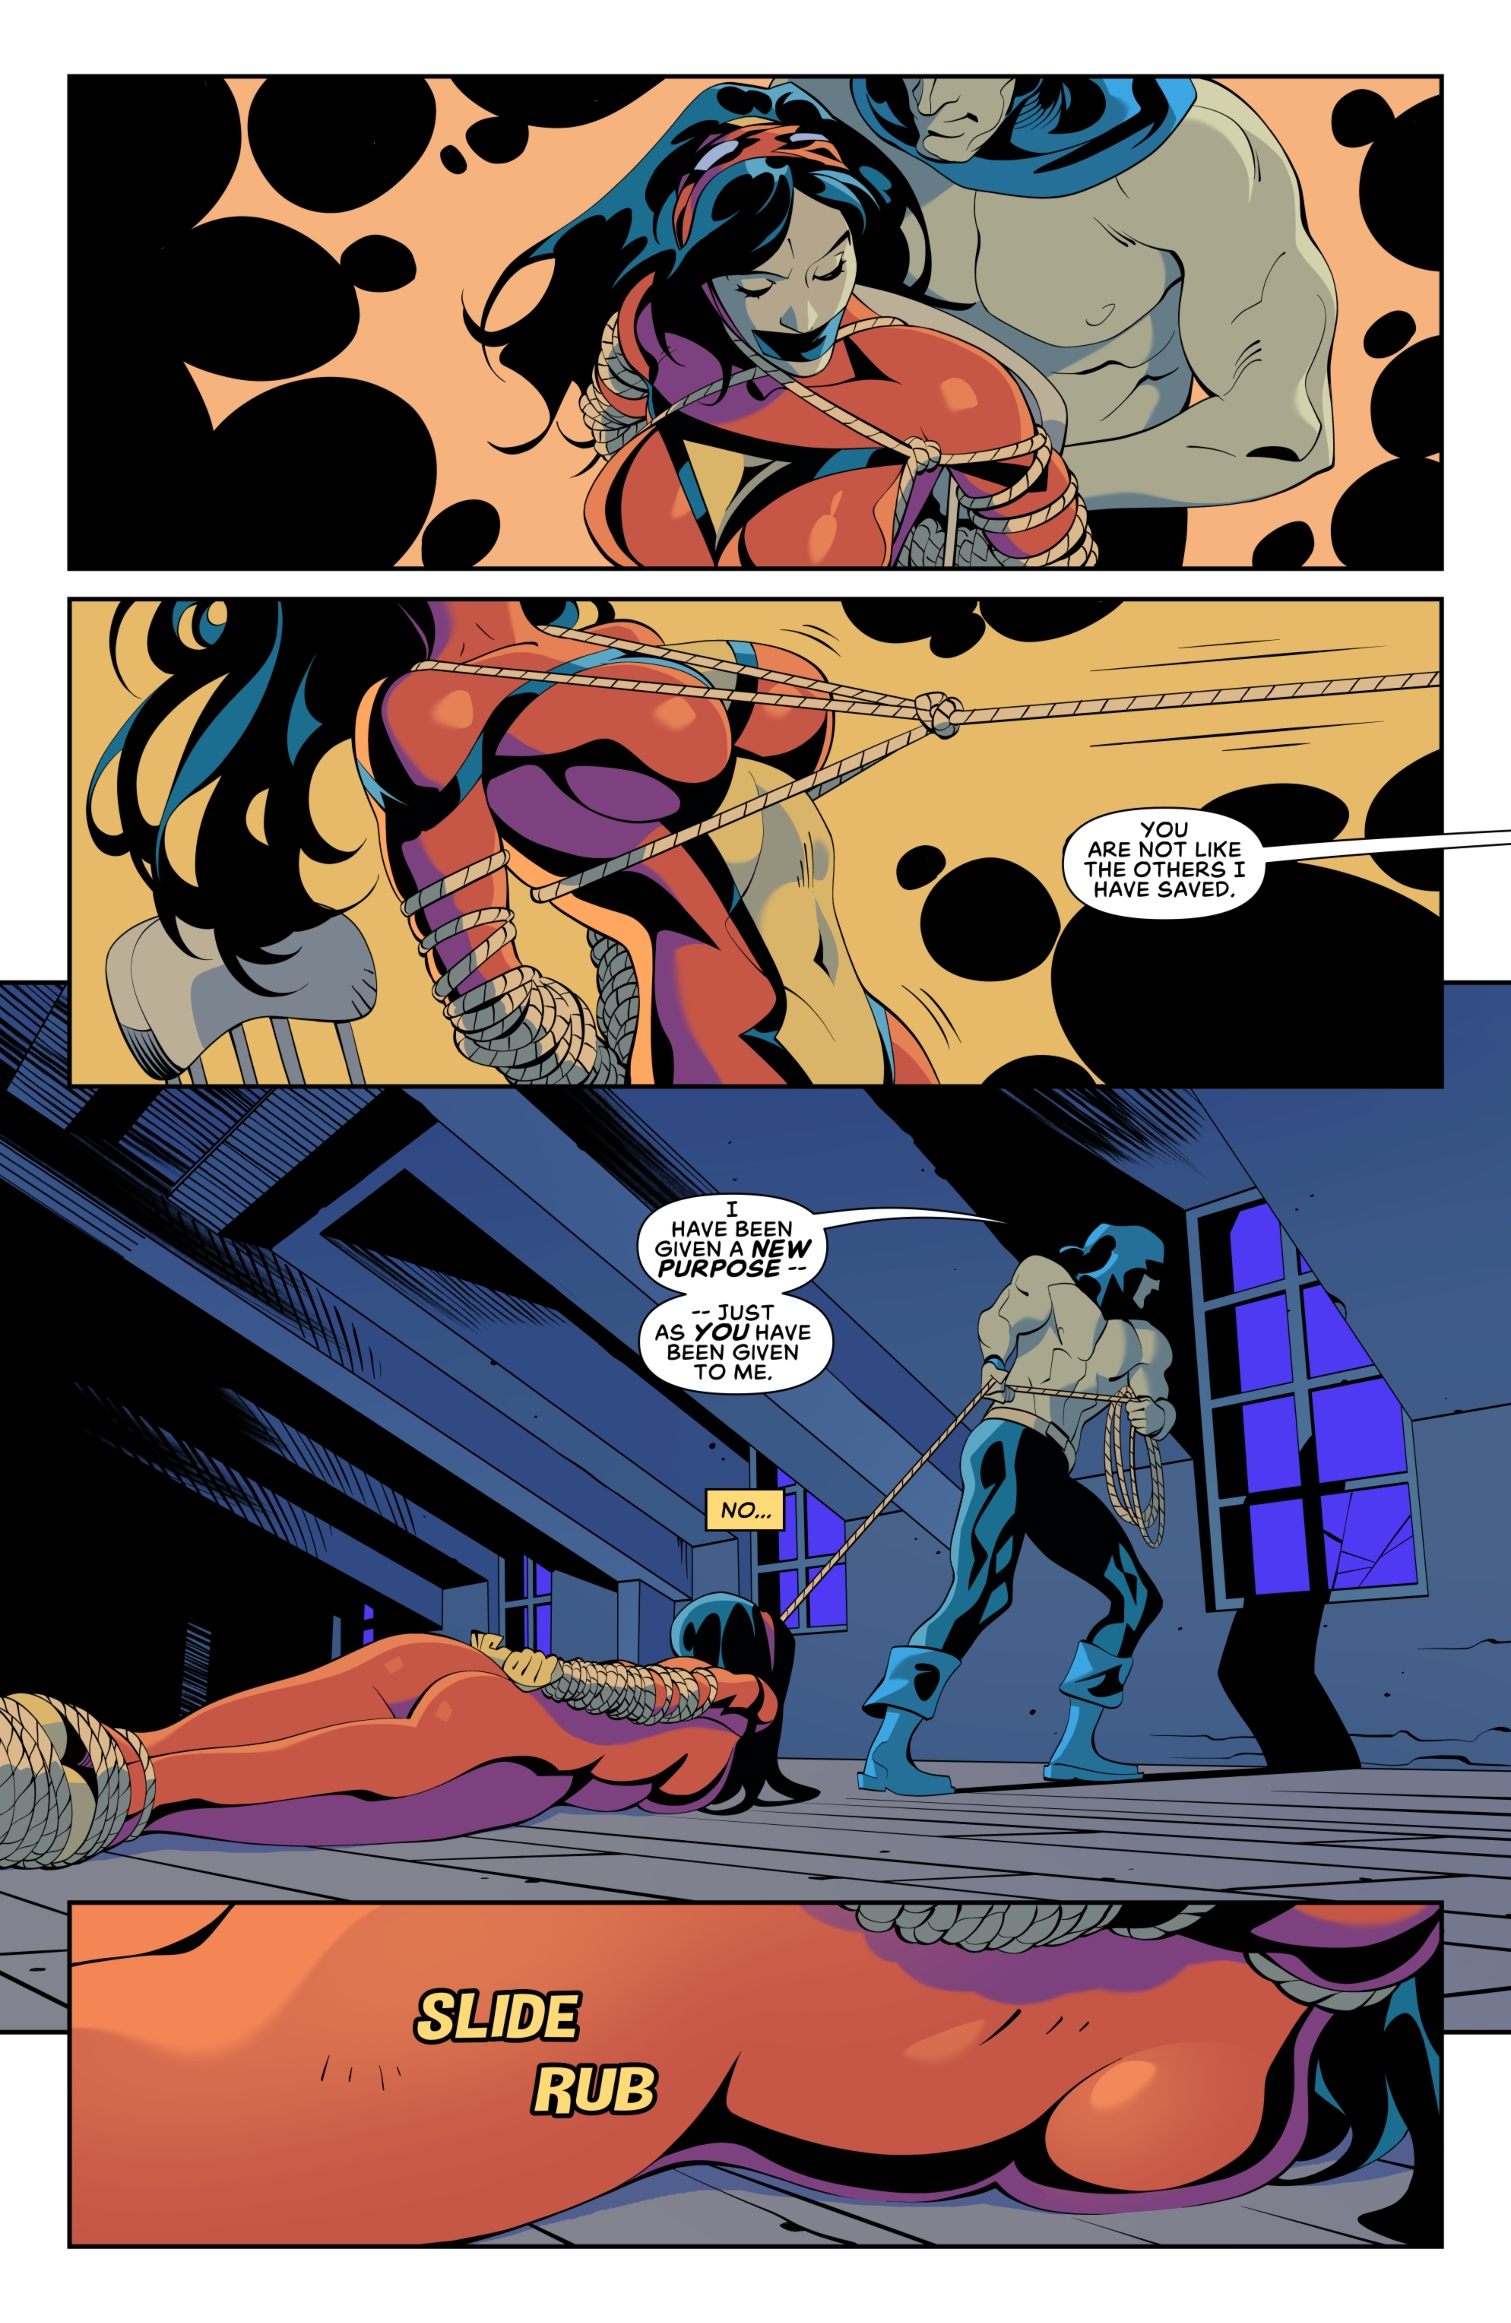 Spider-Woman Return of Hangman Part 1 [Telikor]